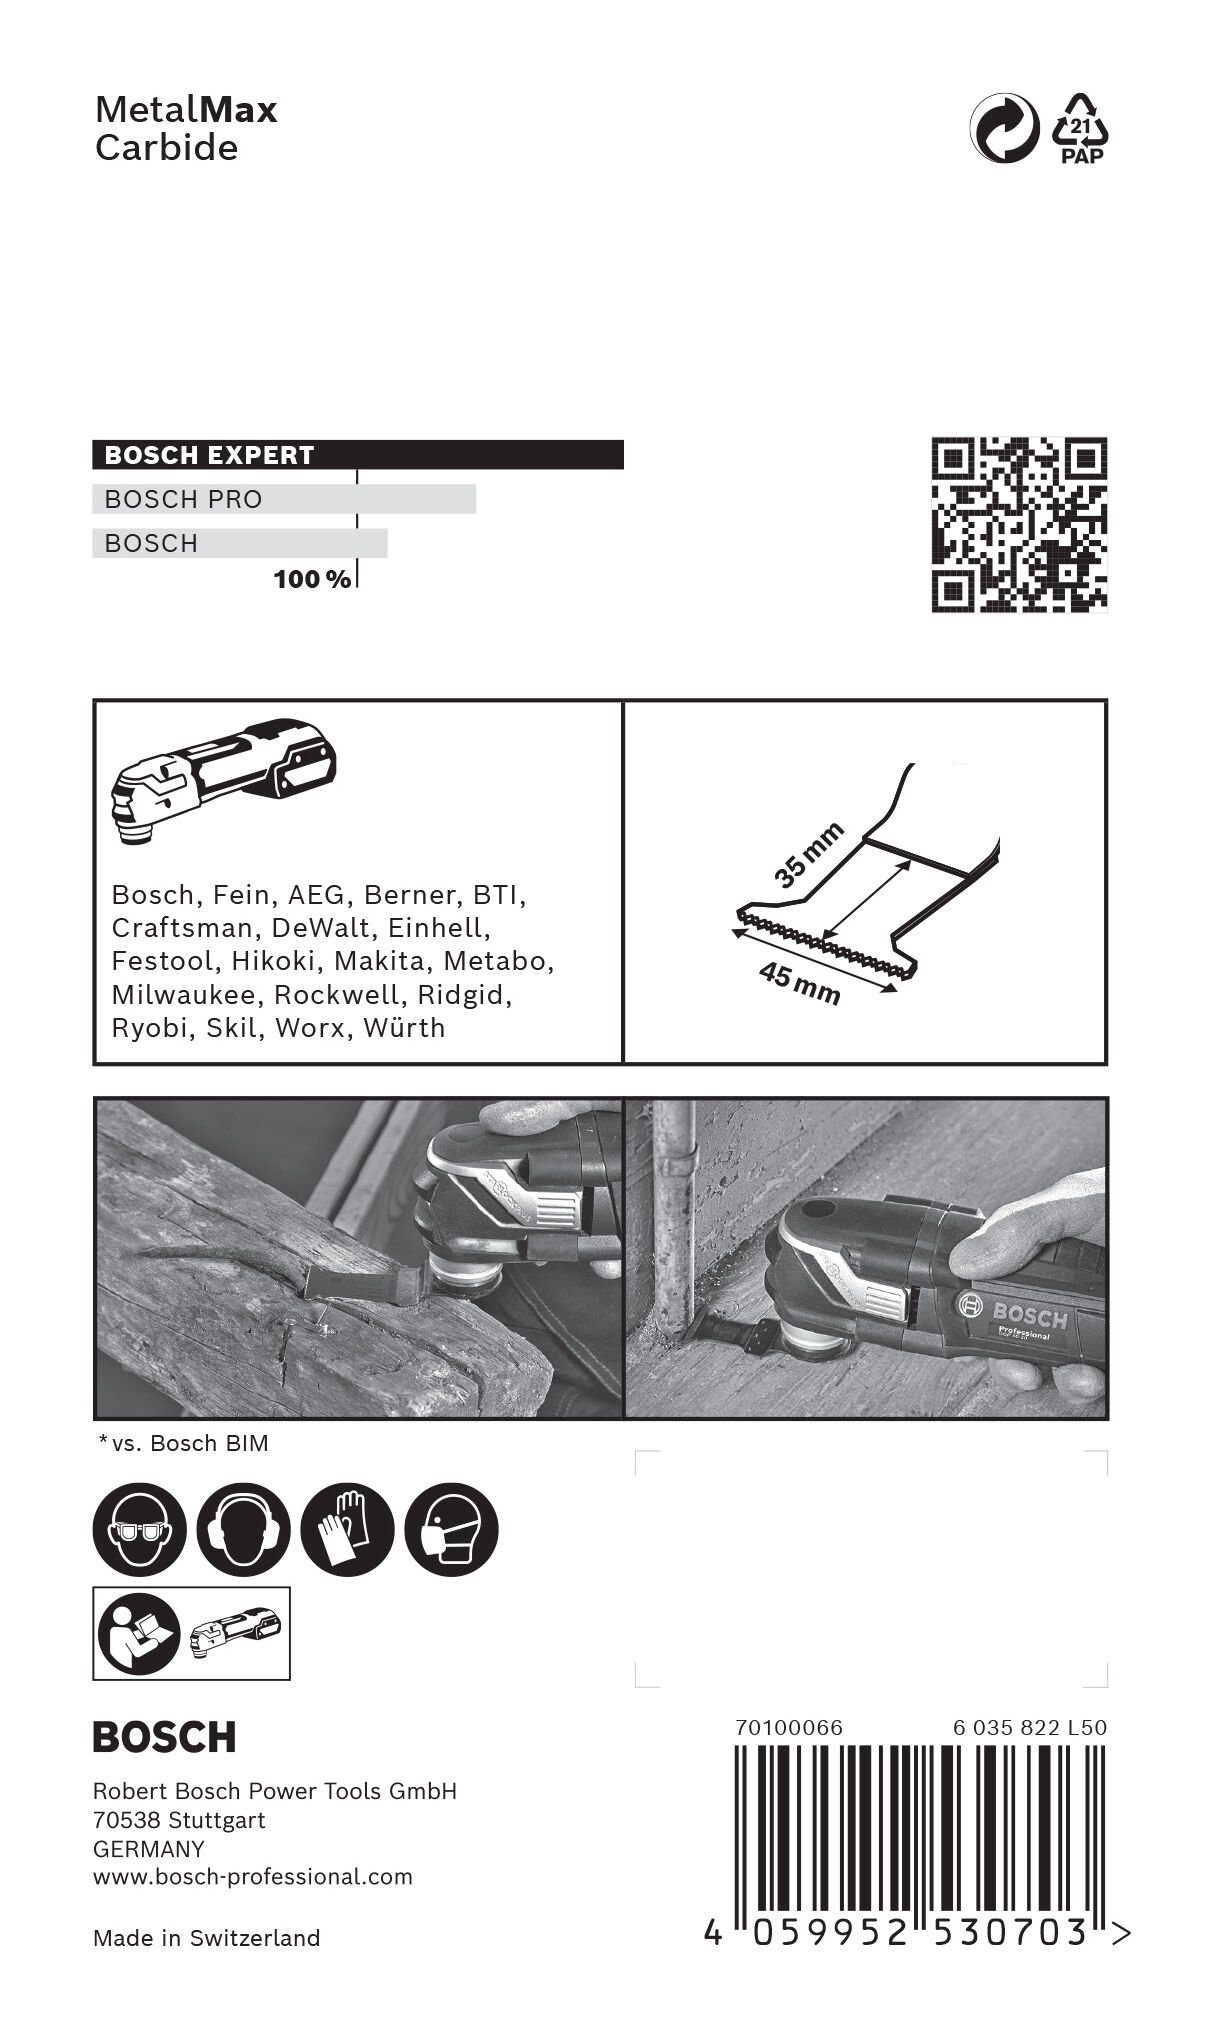 BOSCH Tauchsägeblatt Expert MetalMax Carbide mm 40 MetalMax AIZ x Expert 45 - 45 AT